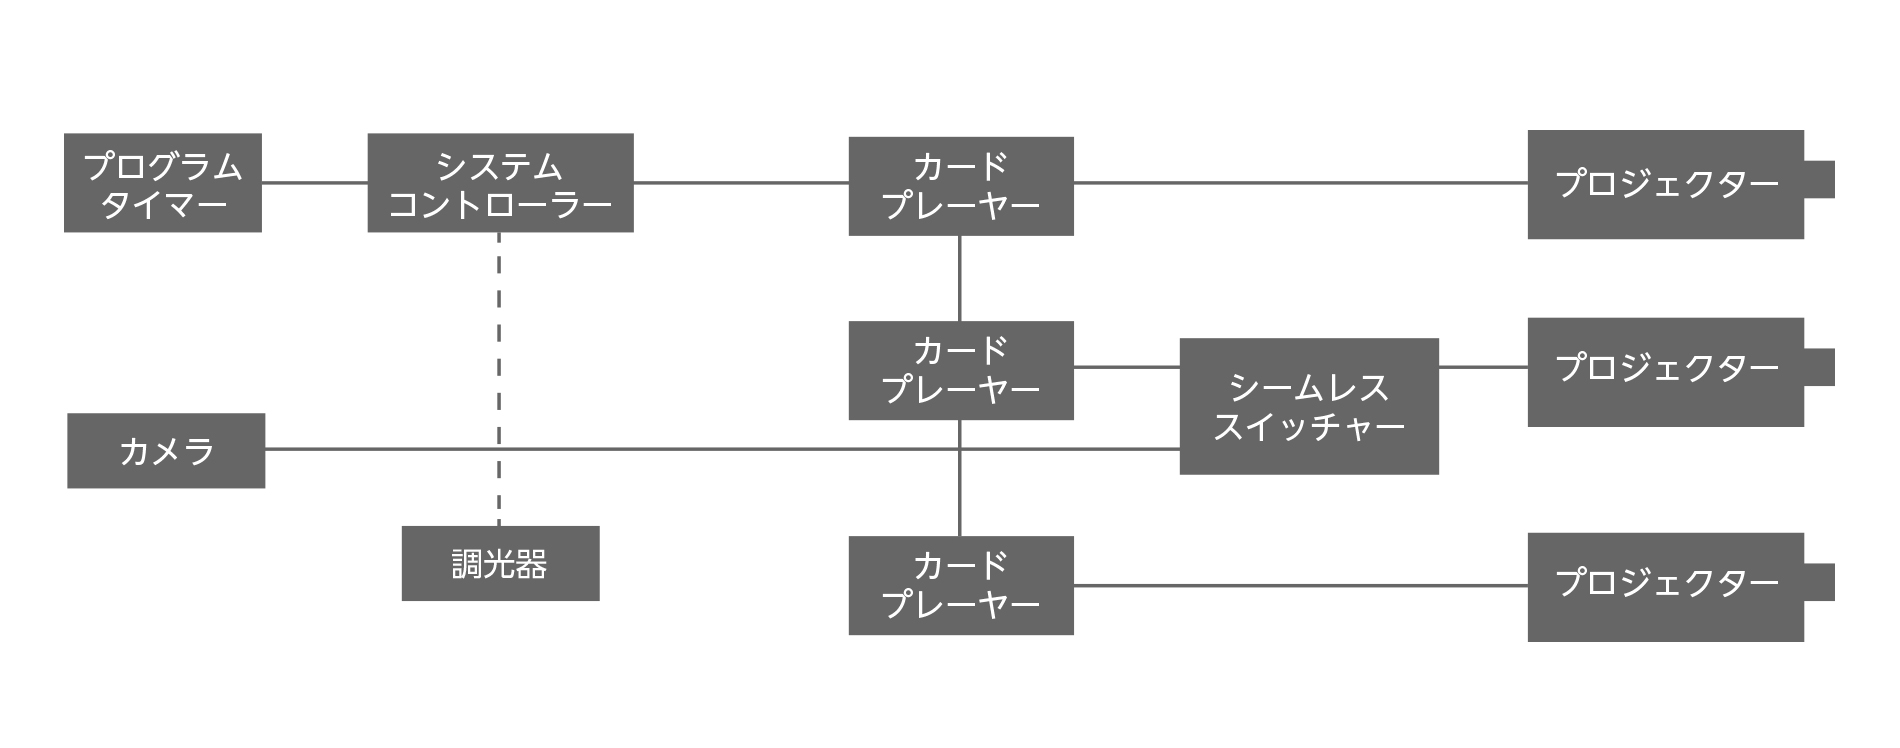 システム概略図